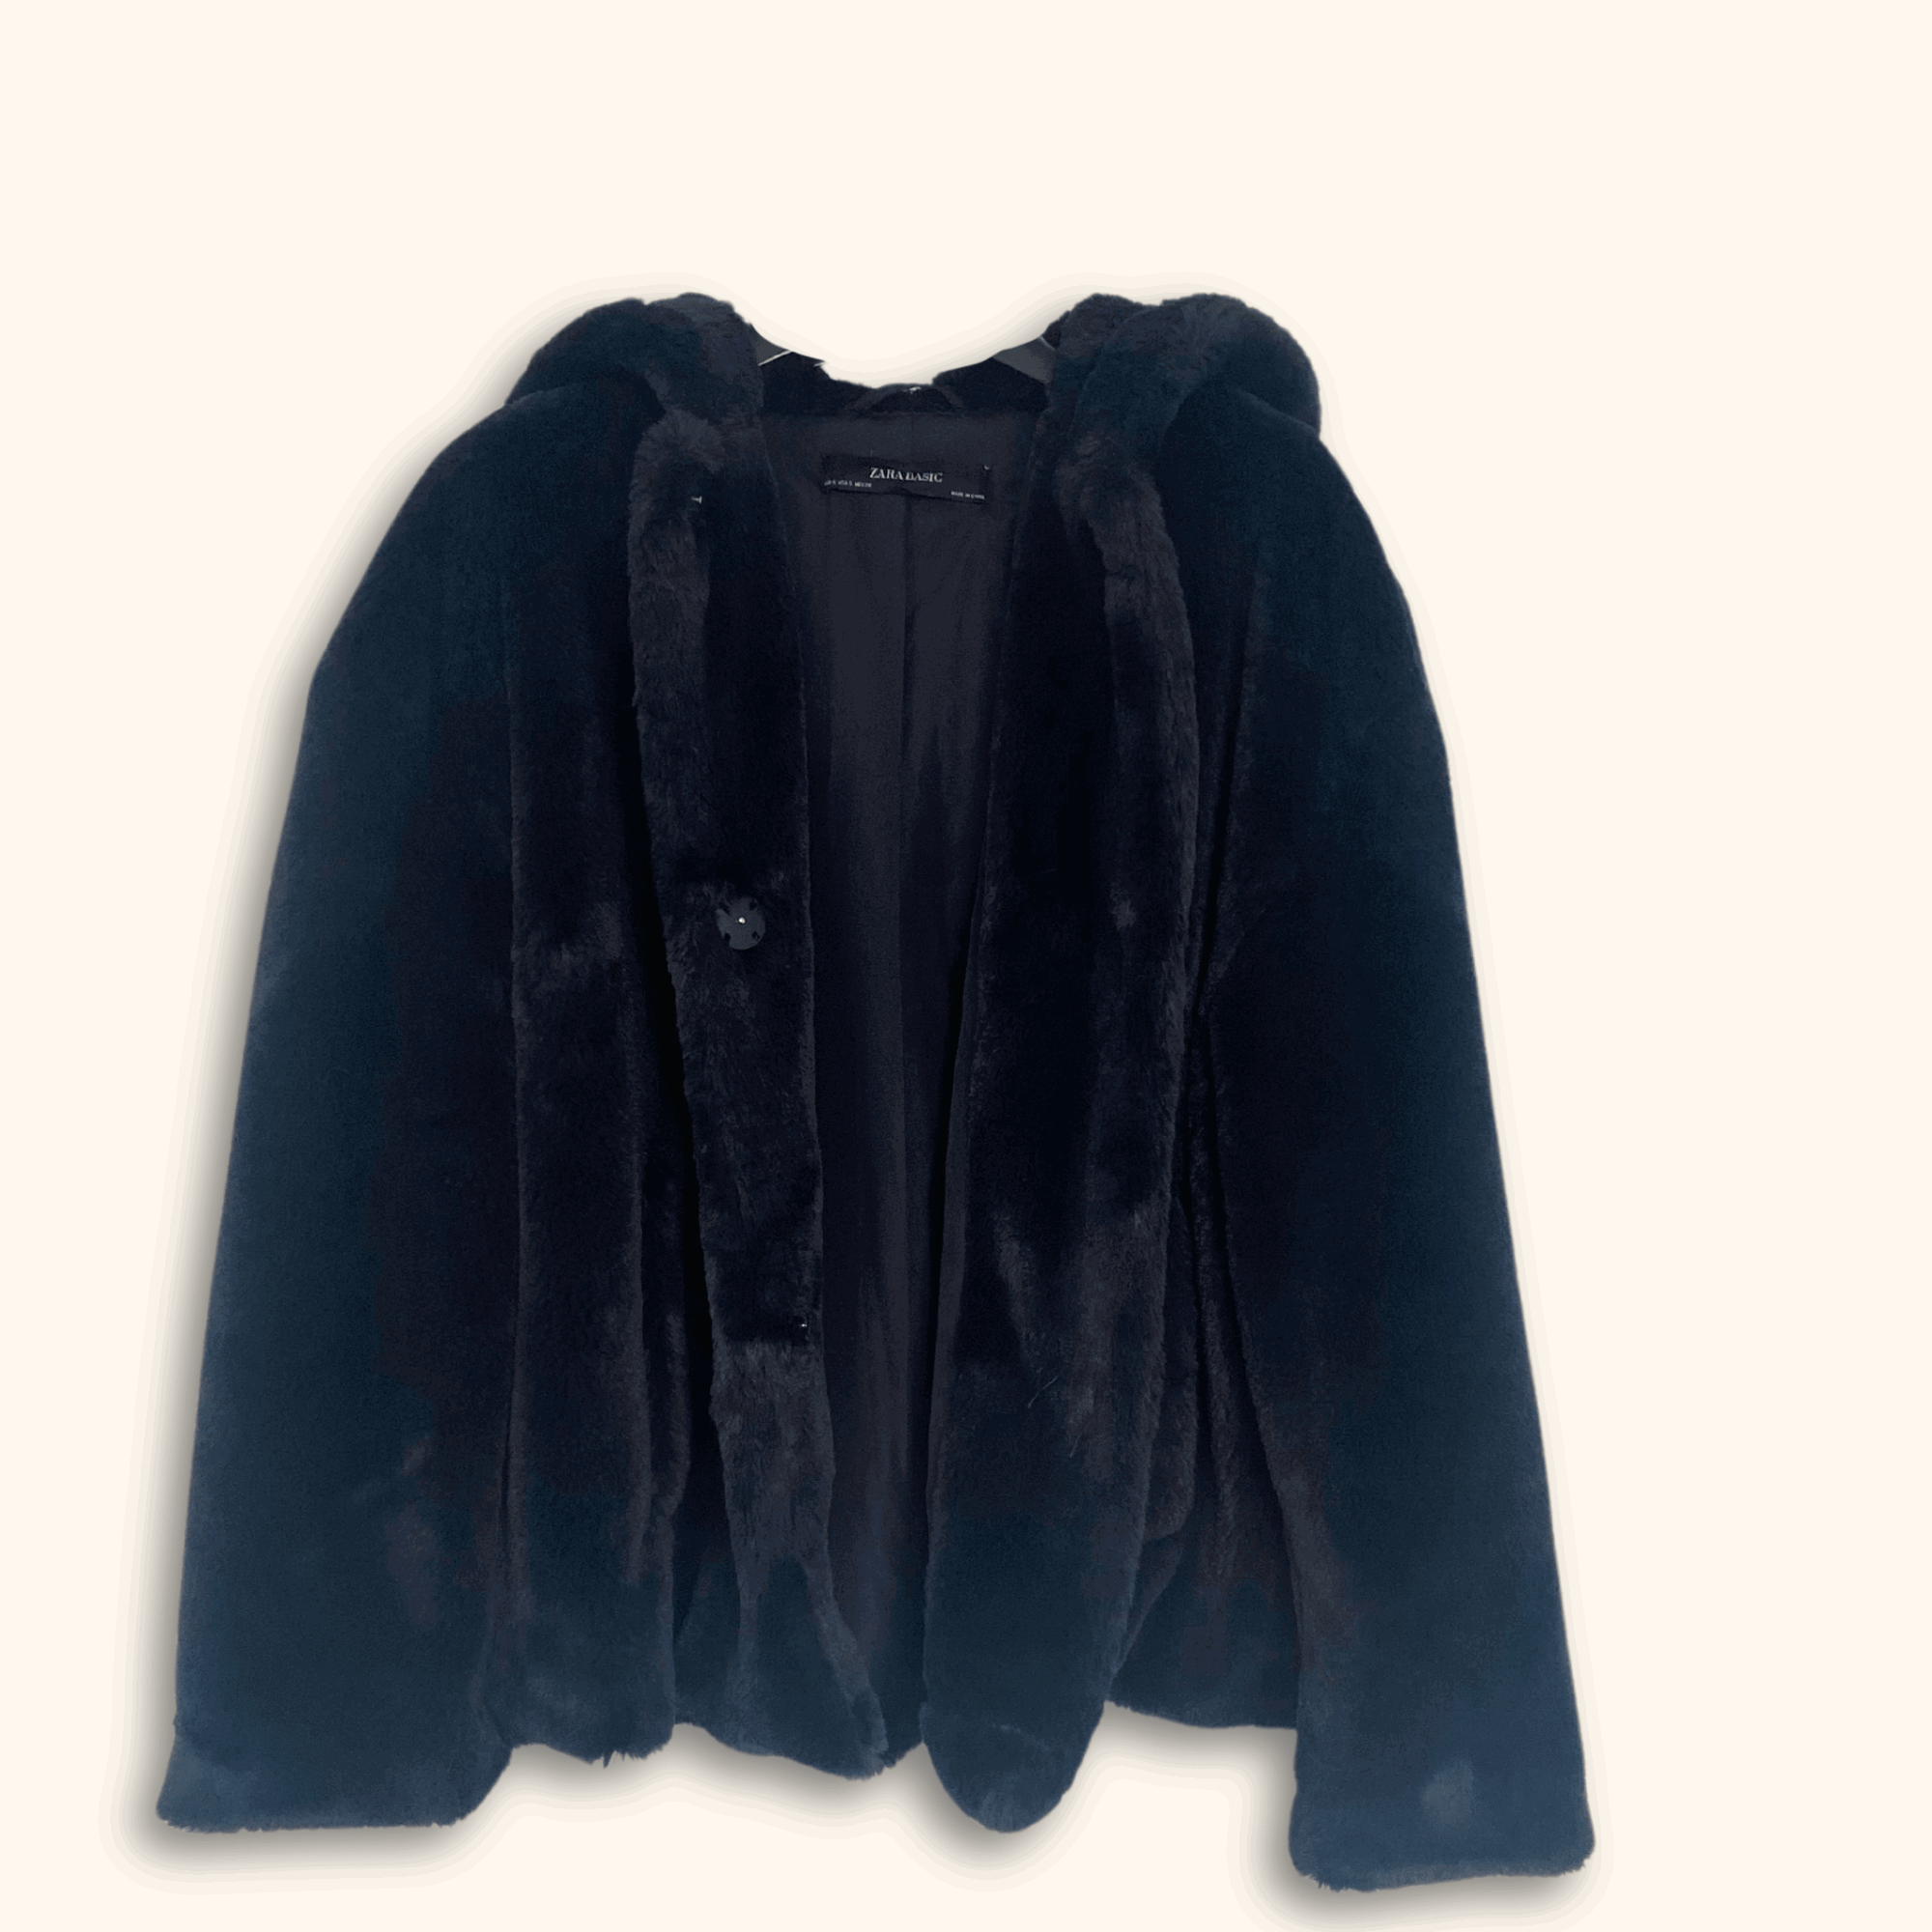 Zara Blue Faux Fur Hooded Coat - Size Small - Zara - Coats &amp; jackets